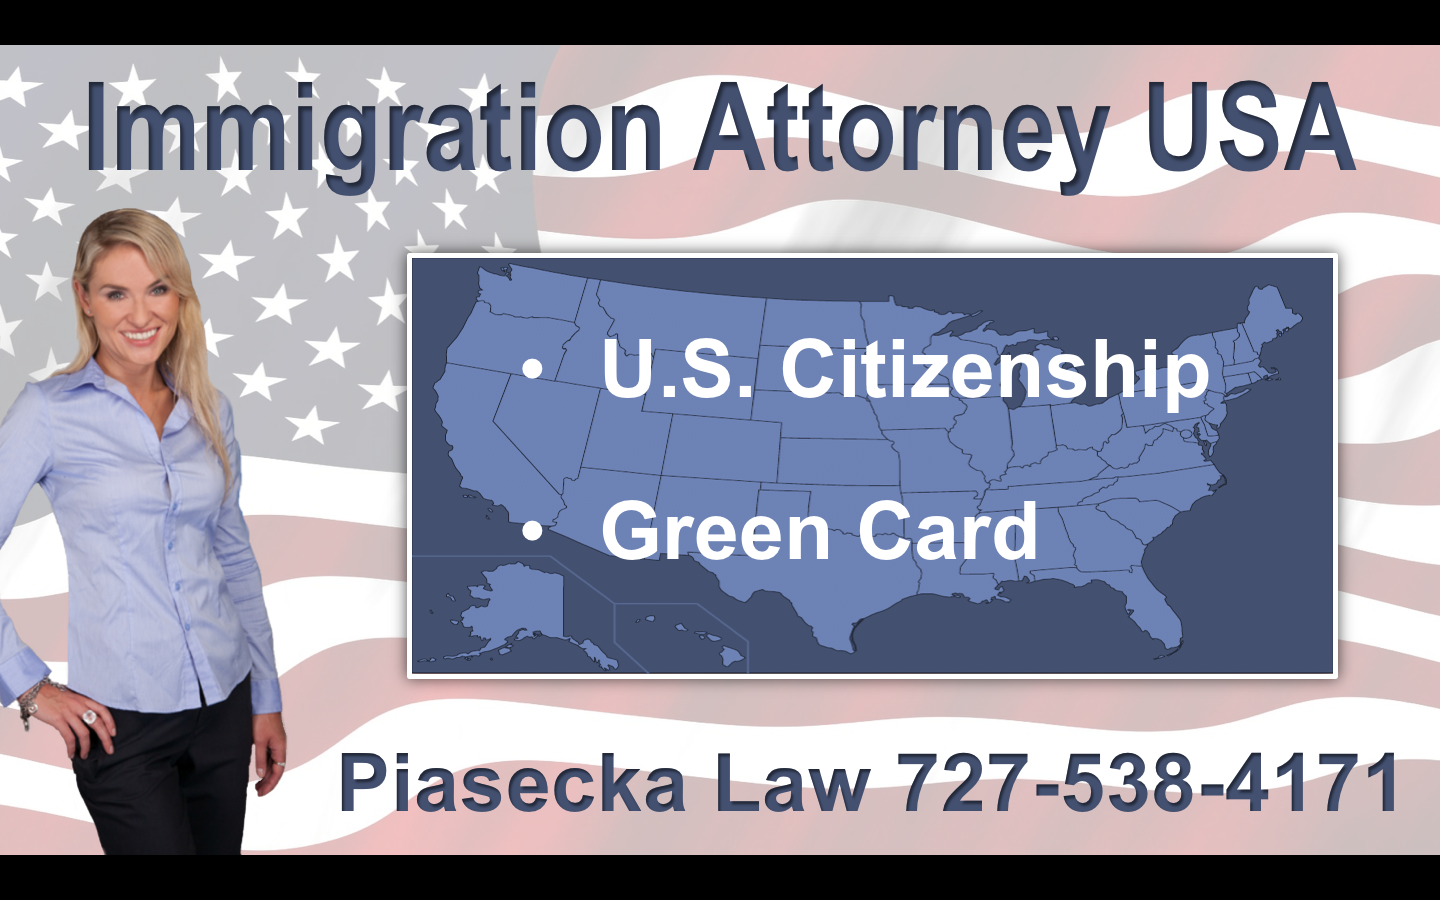 Immigration Attorney USA Attorney Agnieszka Aga Piasecka